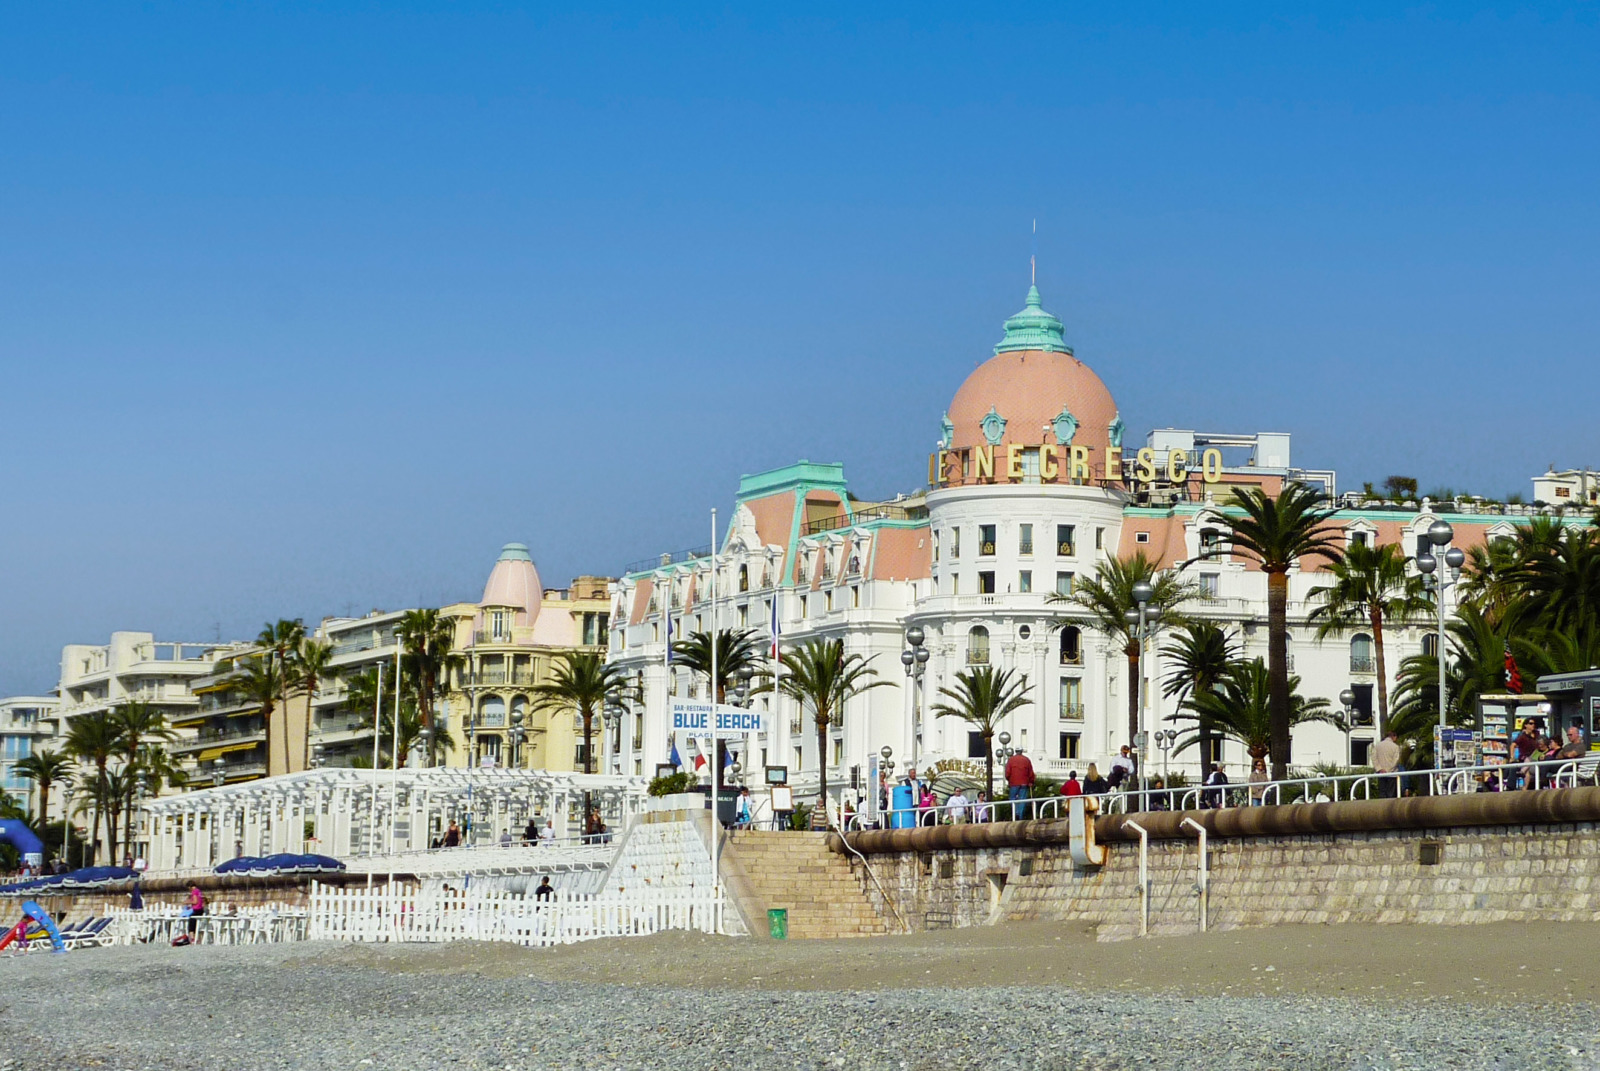 French Riviera - Hôtel Negresco, Nice © Miniwark - licence [CC BY-SA 3.0] from Wikimedia Commons